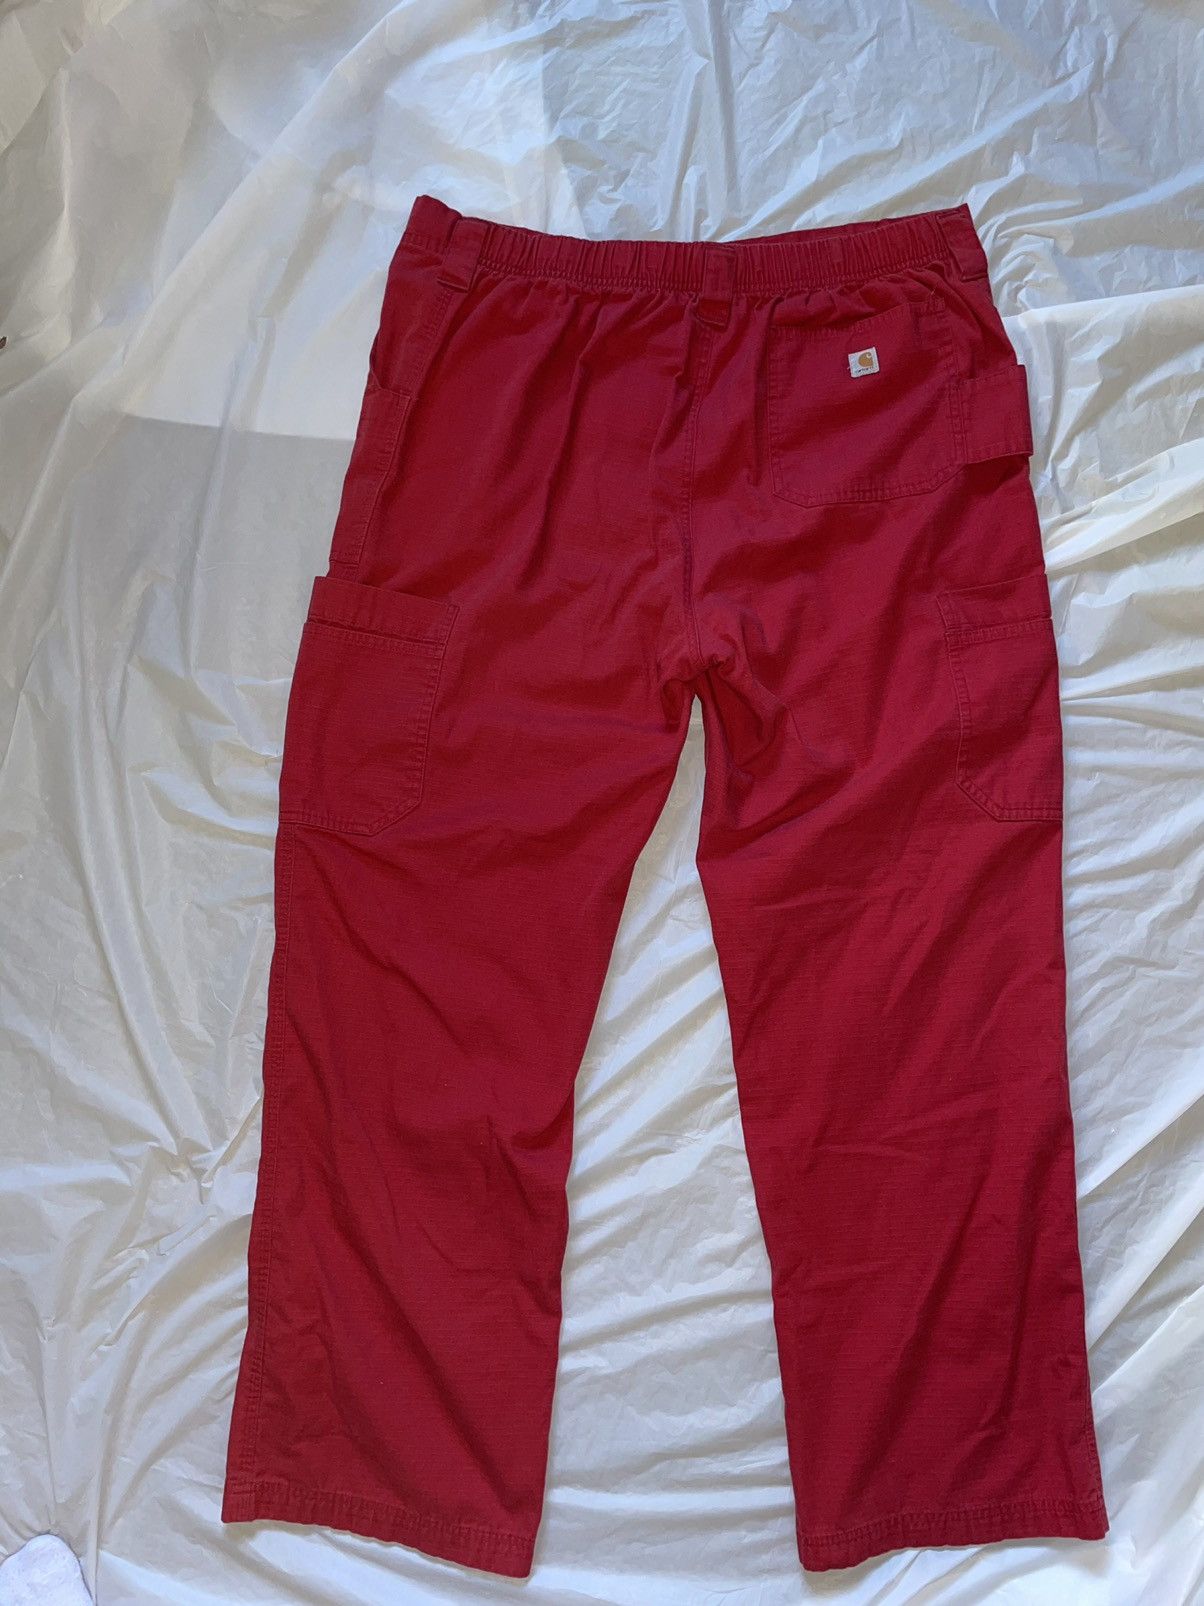 Carhartt Carhartt Lightweight Red Cargo Pants Size US 36 / EU 52 - 6 Thumbnail